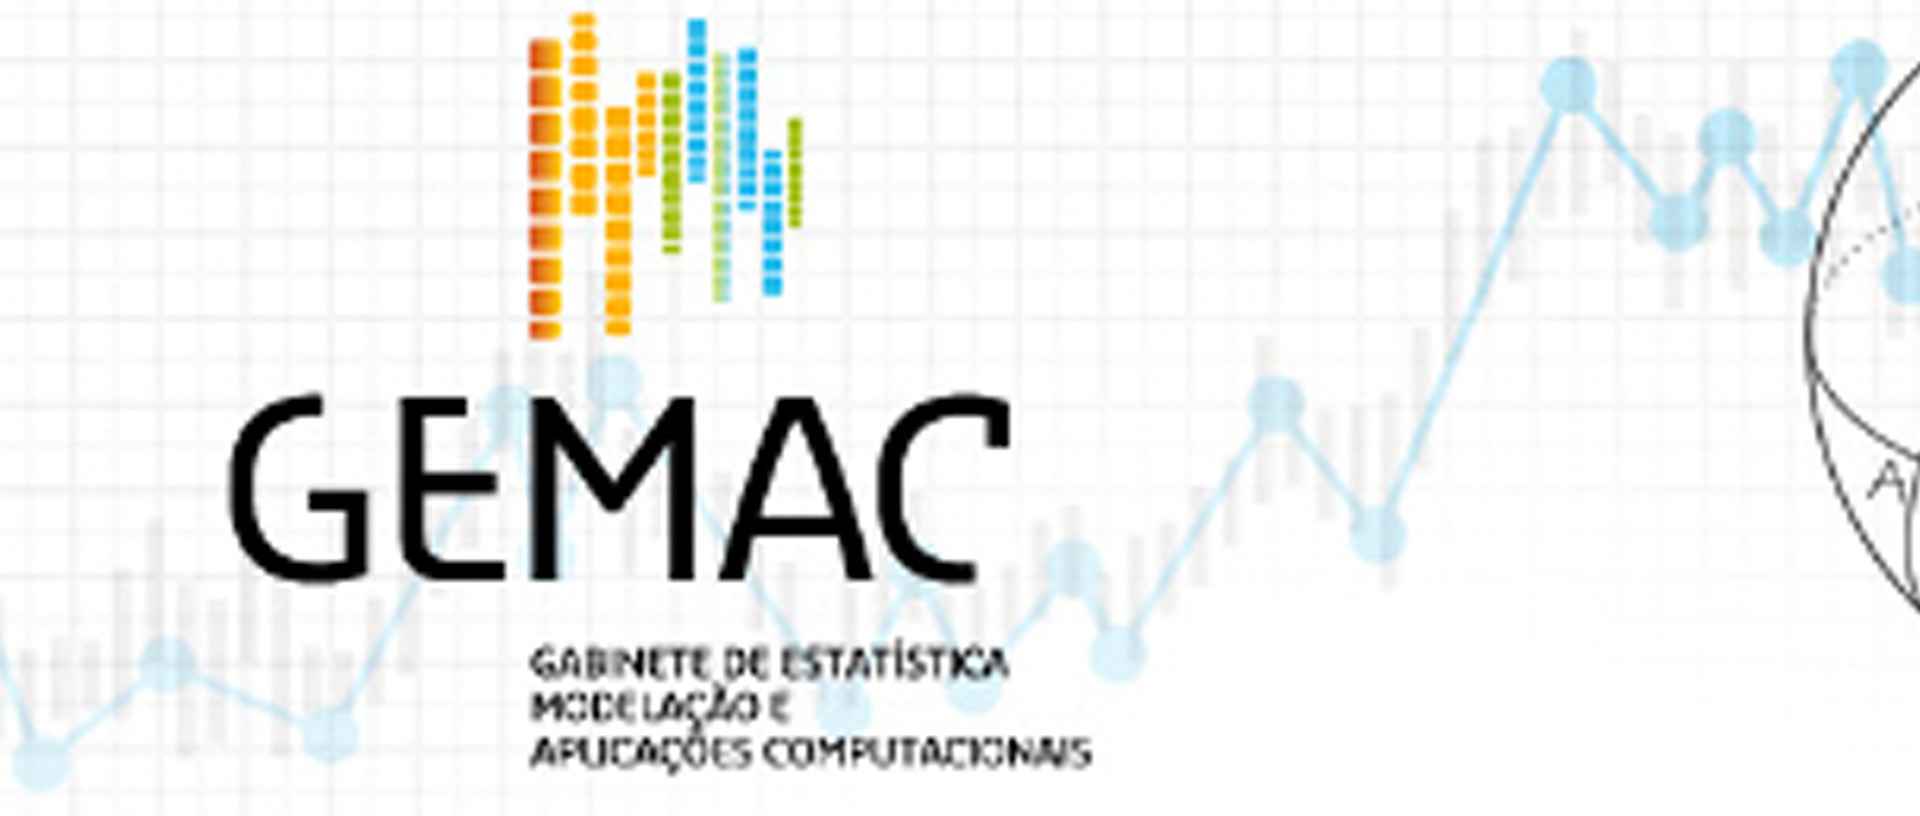 Logótipo do GEMAC - Gabinete de Estatística Modelação e Aplicações Computacionais